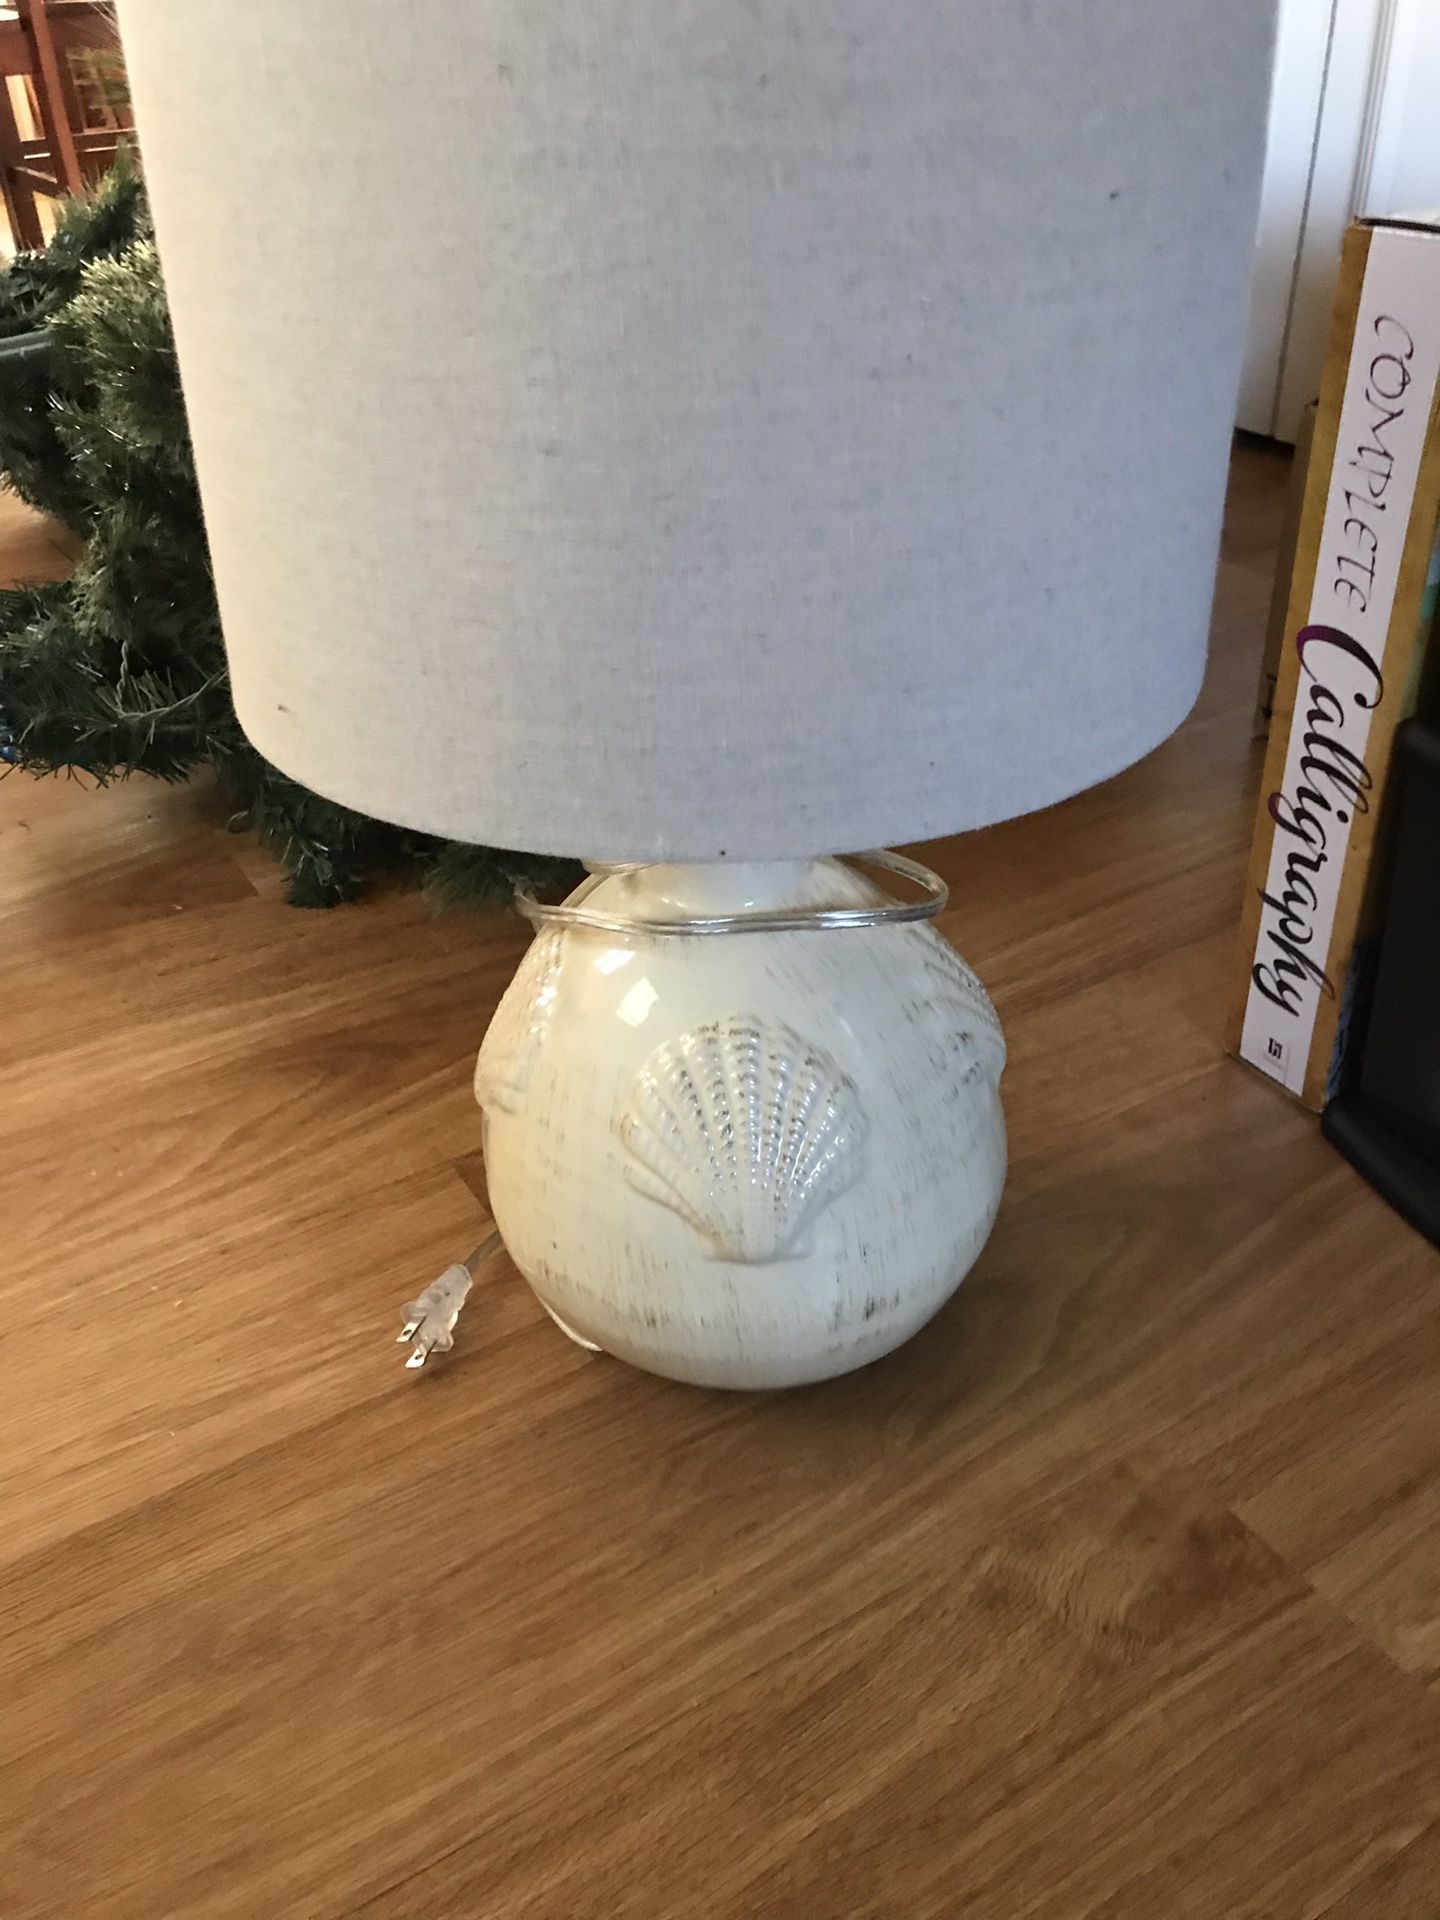 Seashell lamp